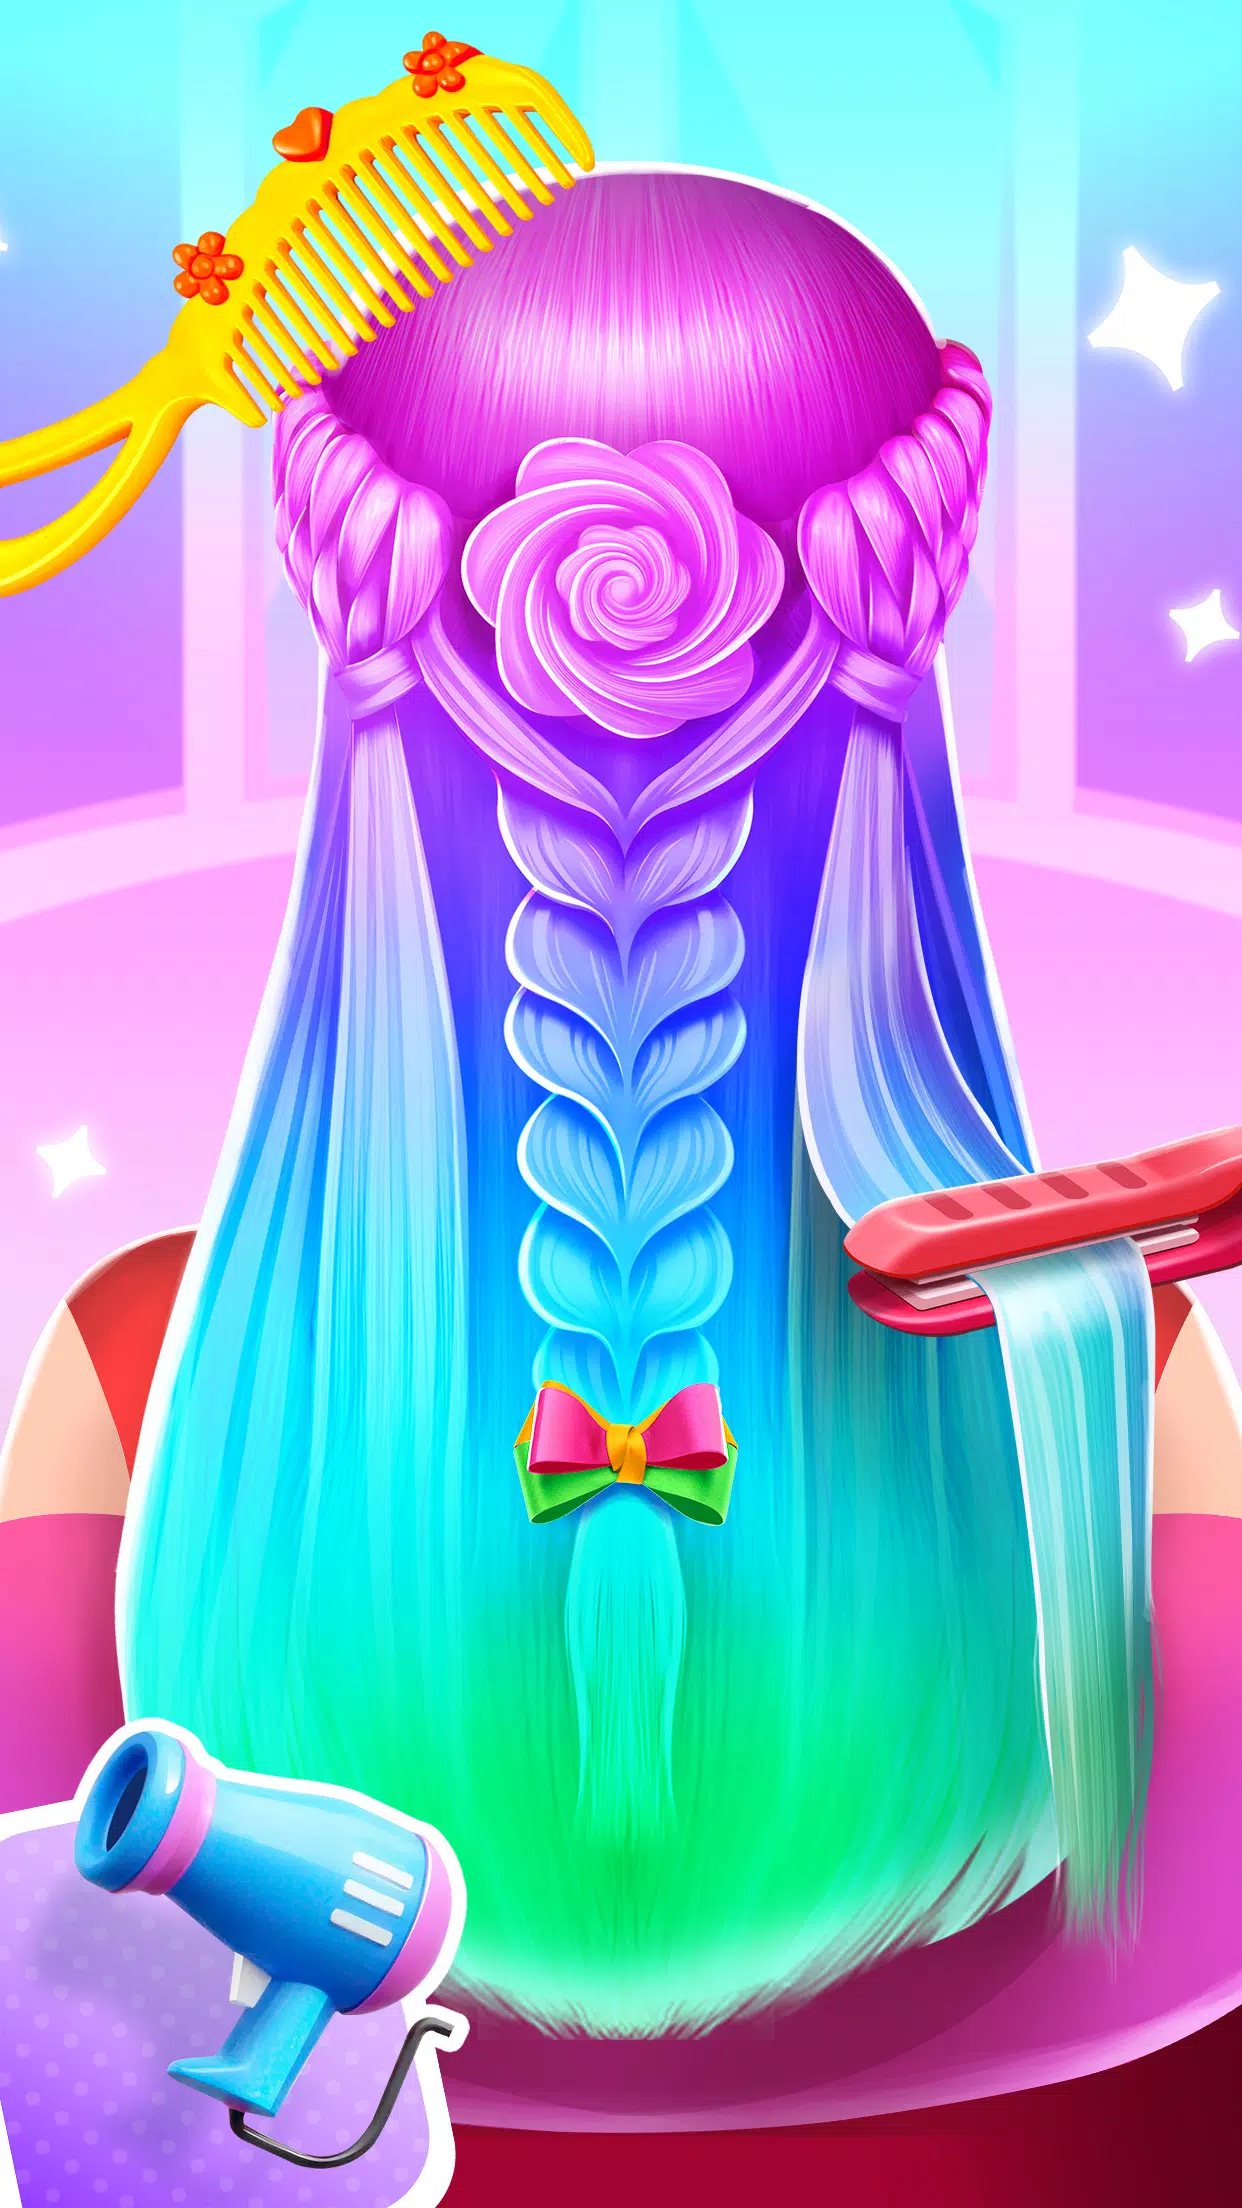 Hair Salão Maquiagem E Vestir – Apps no Google Play